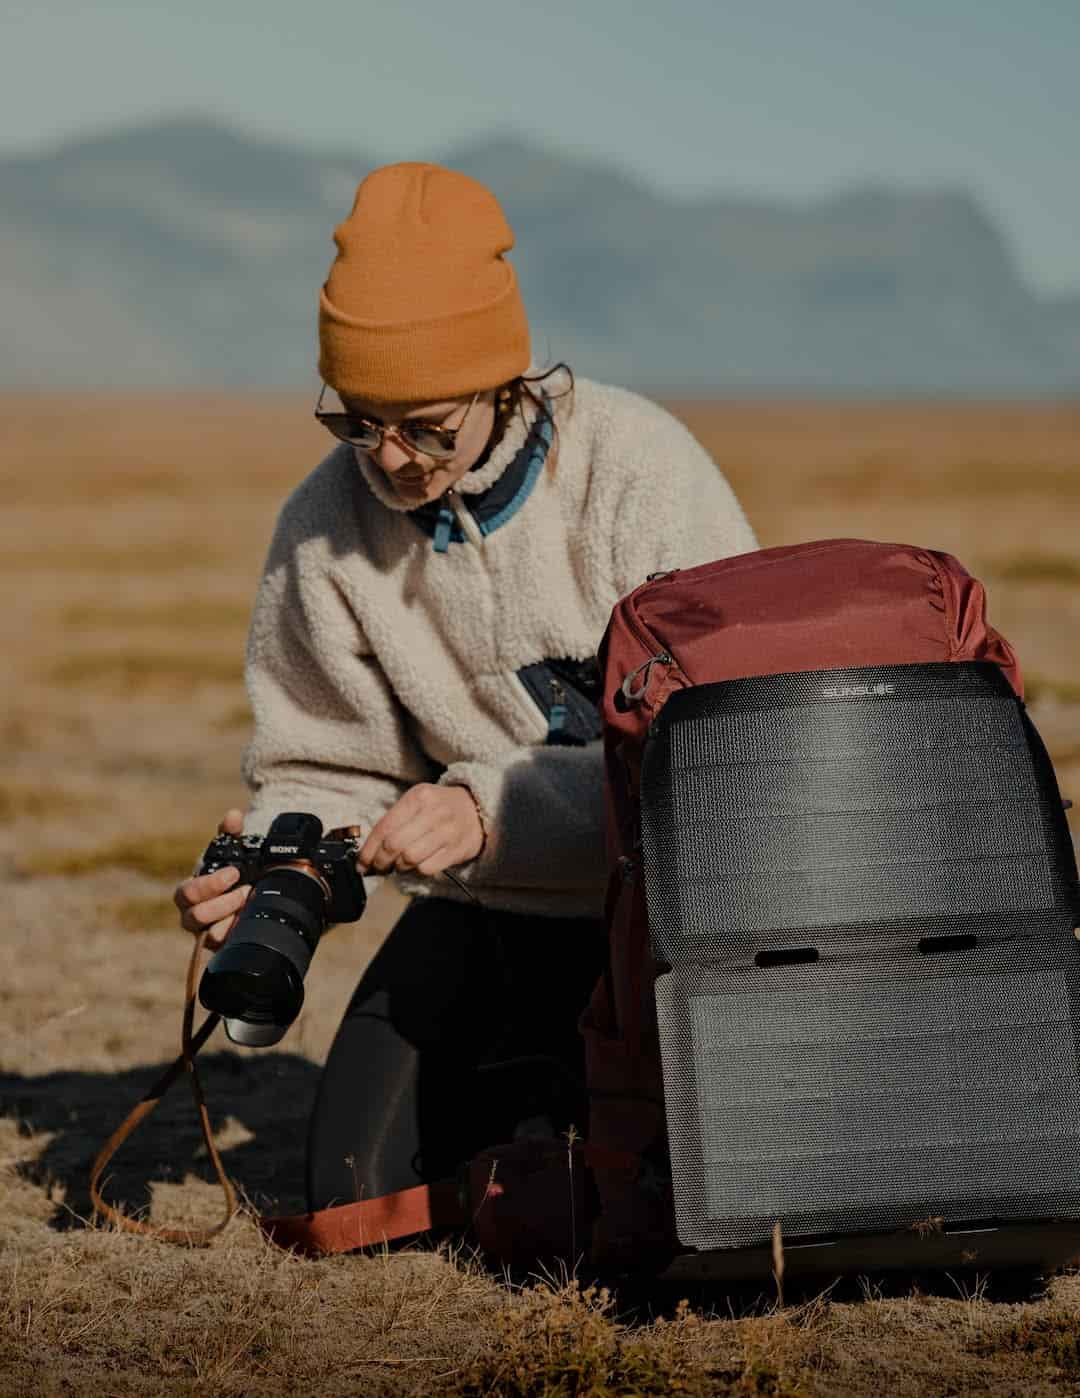 Frau, die ein Foto mit einem an ihrem Rucksack befestigten Wander-Solarmodul auf dem Boden machen will